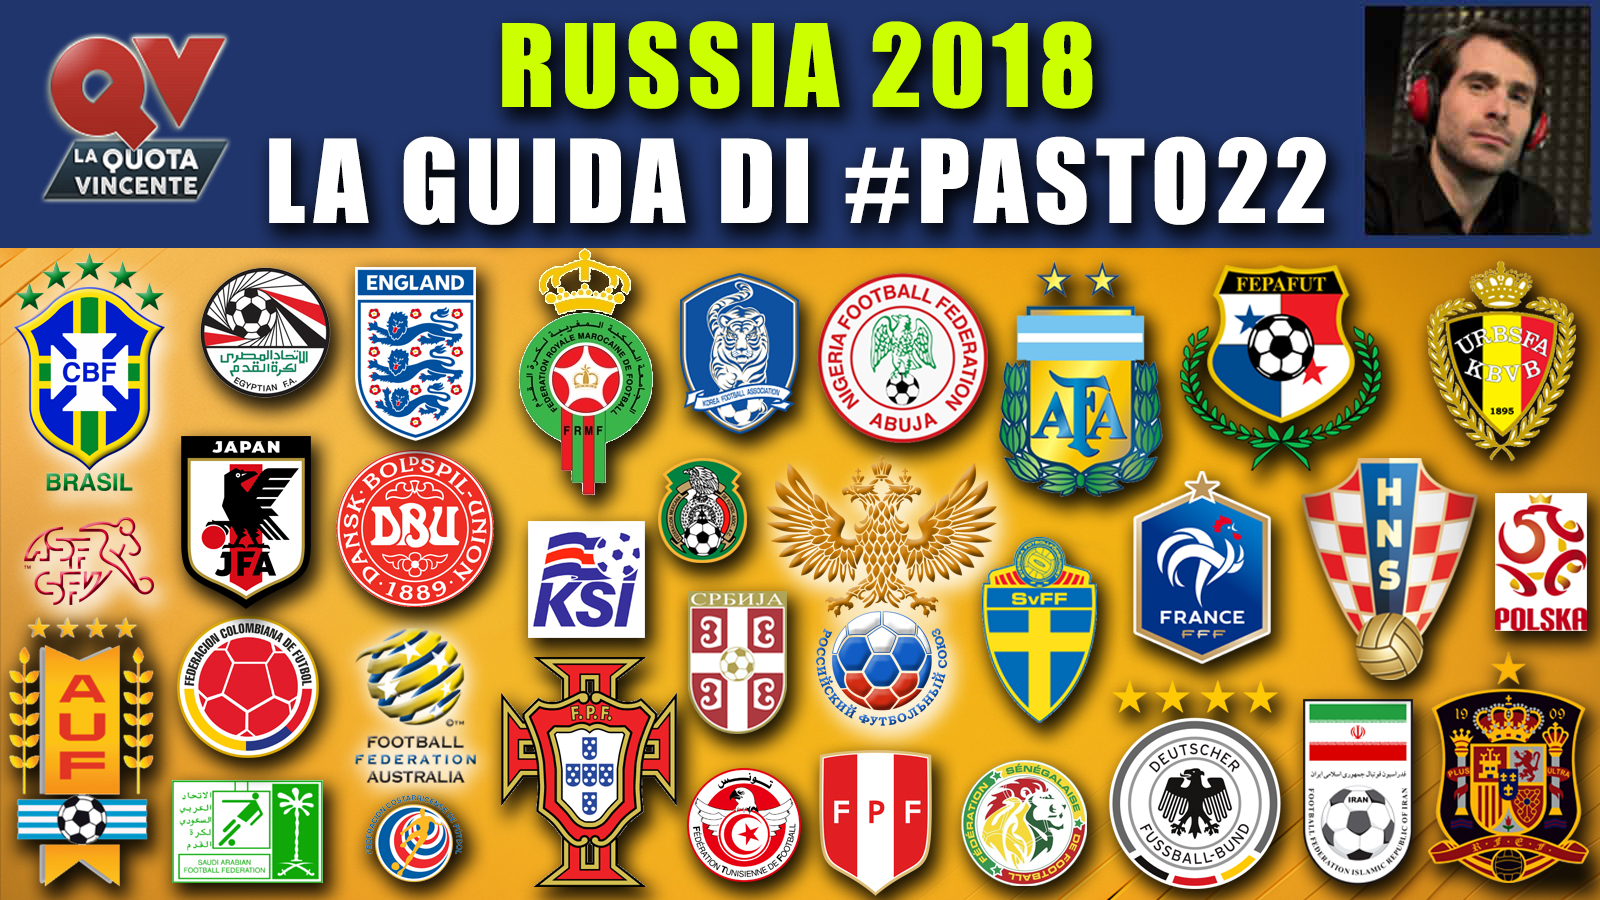 Russia 2018: la guida completa ai Mondiali: squadre, rose, pronostici e news: clicca e scopri tutto